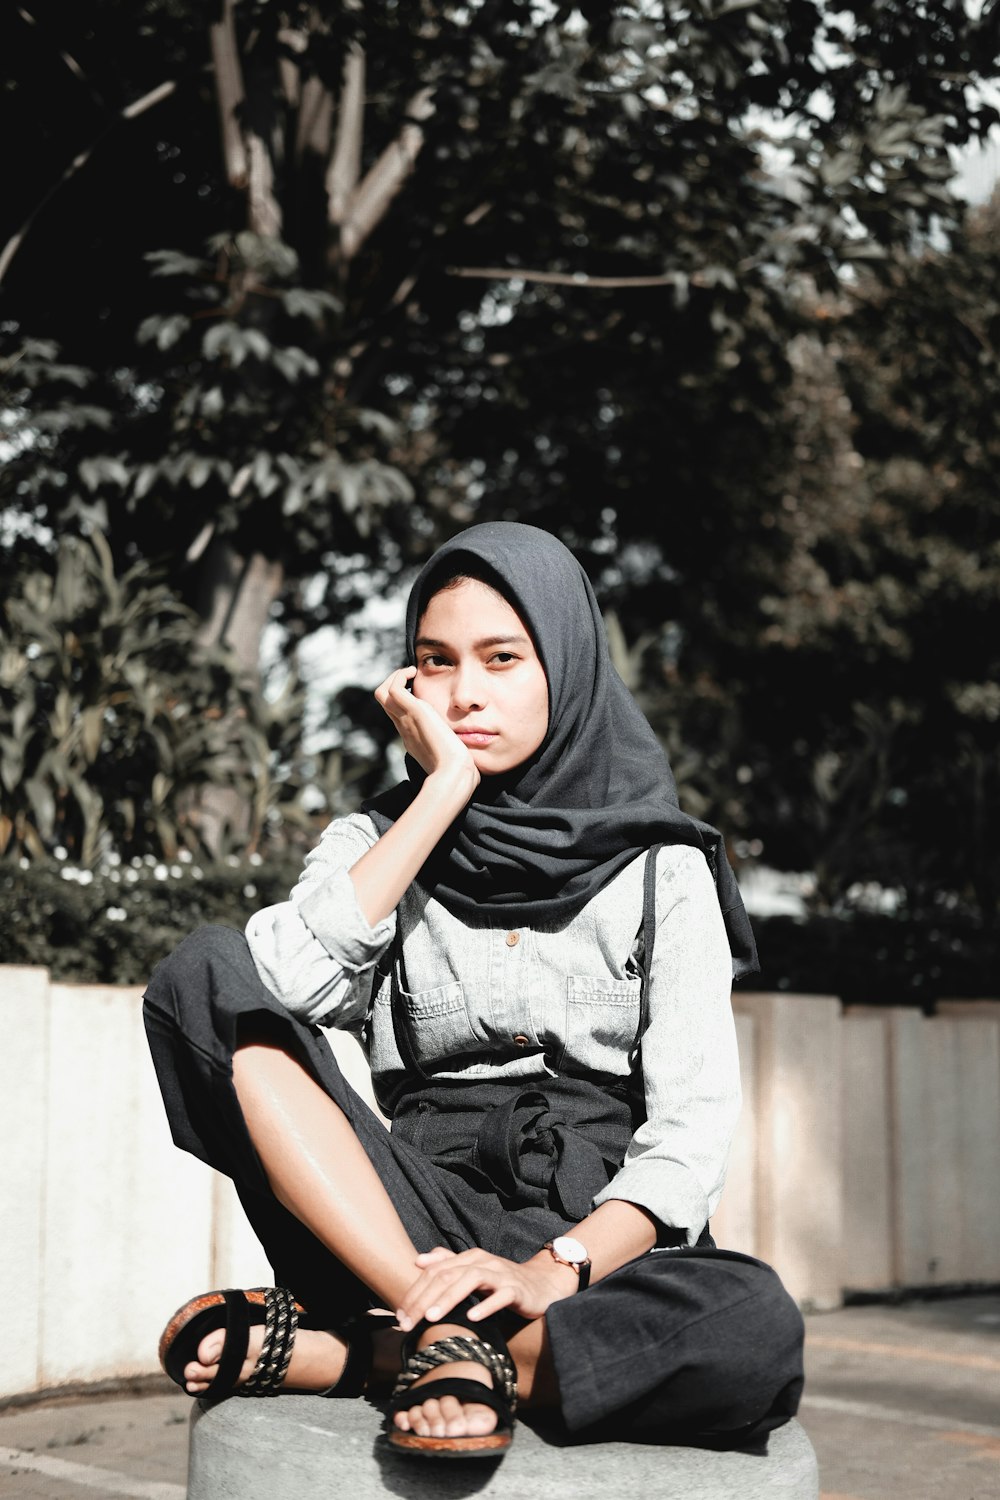 검은 히잡과 회색 긴팔 셔츠를 입고 콘크리트 벤치에 앉아 있는 여자